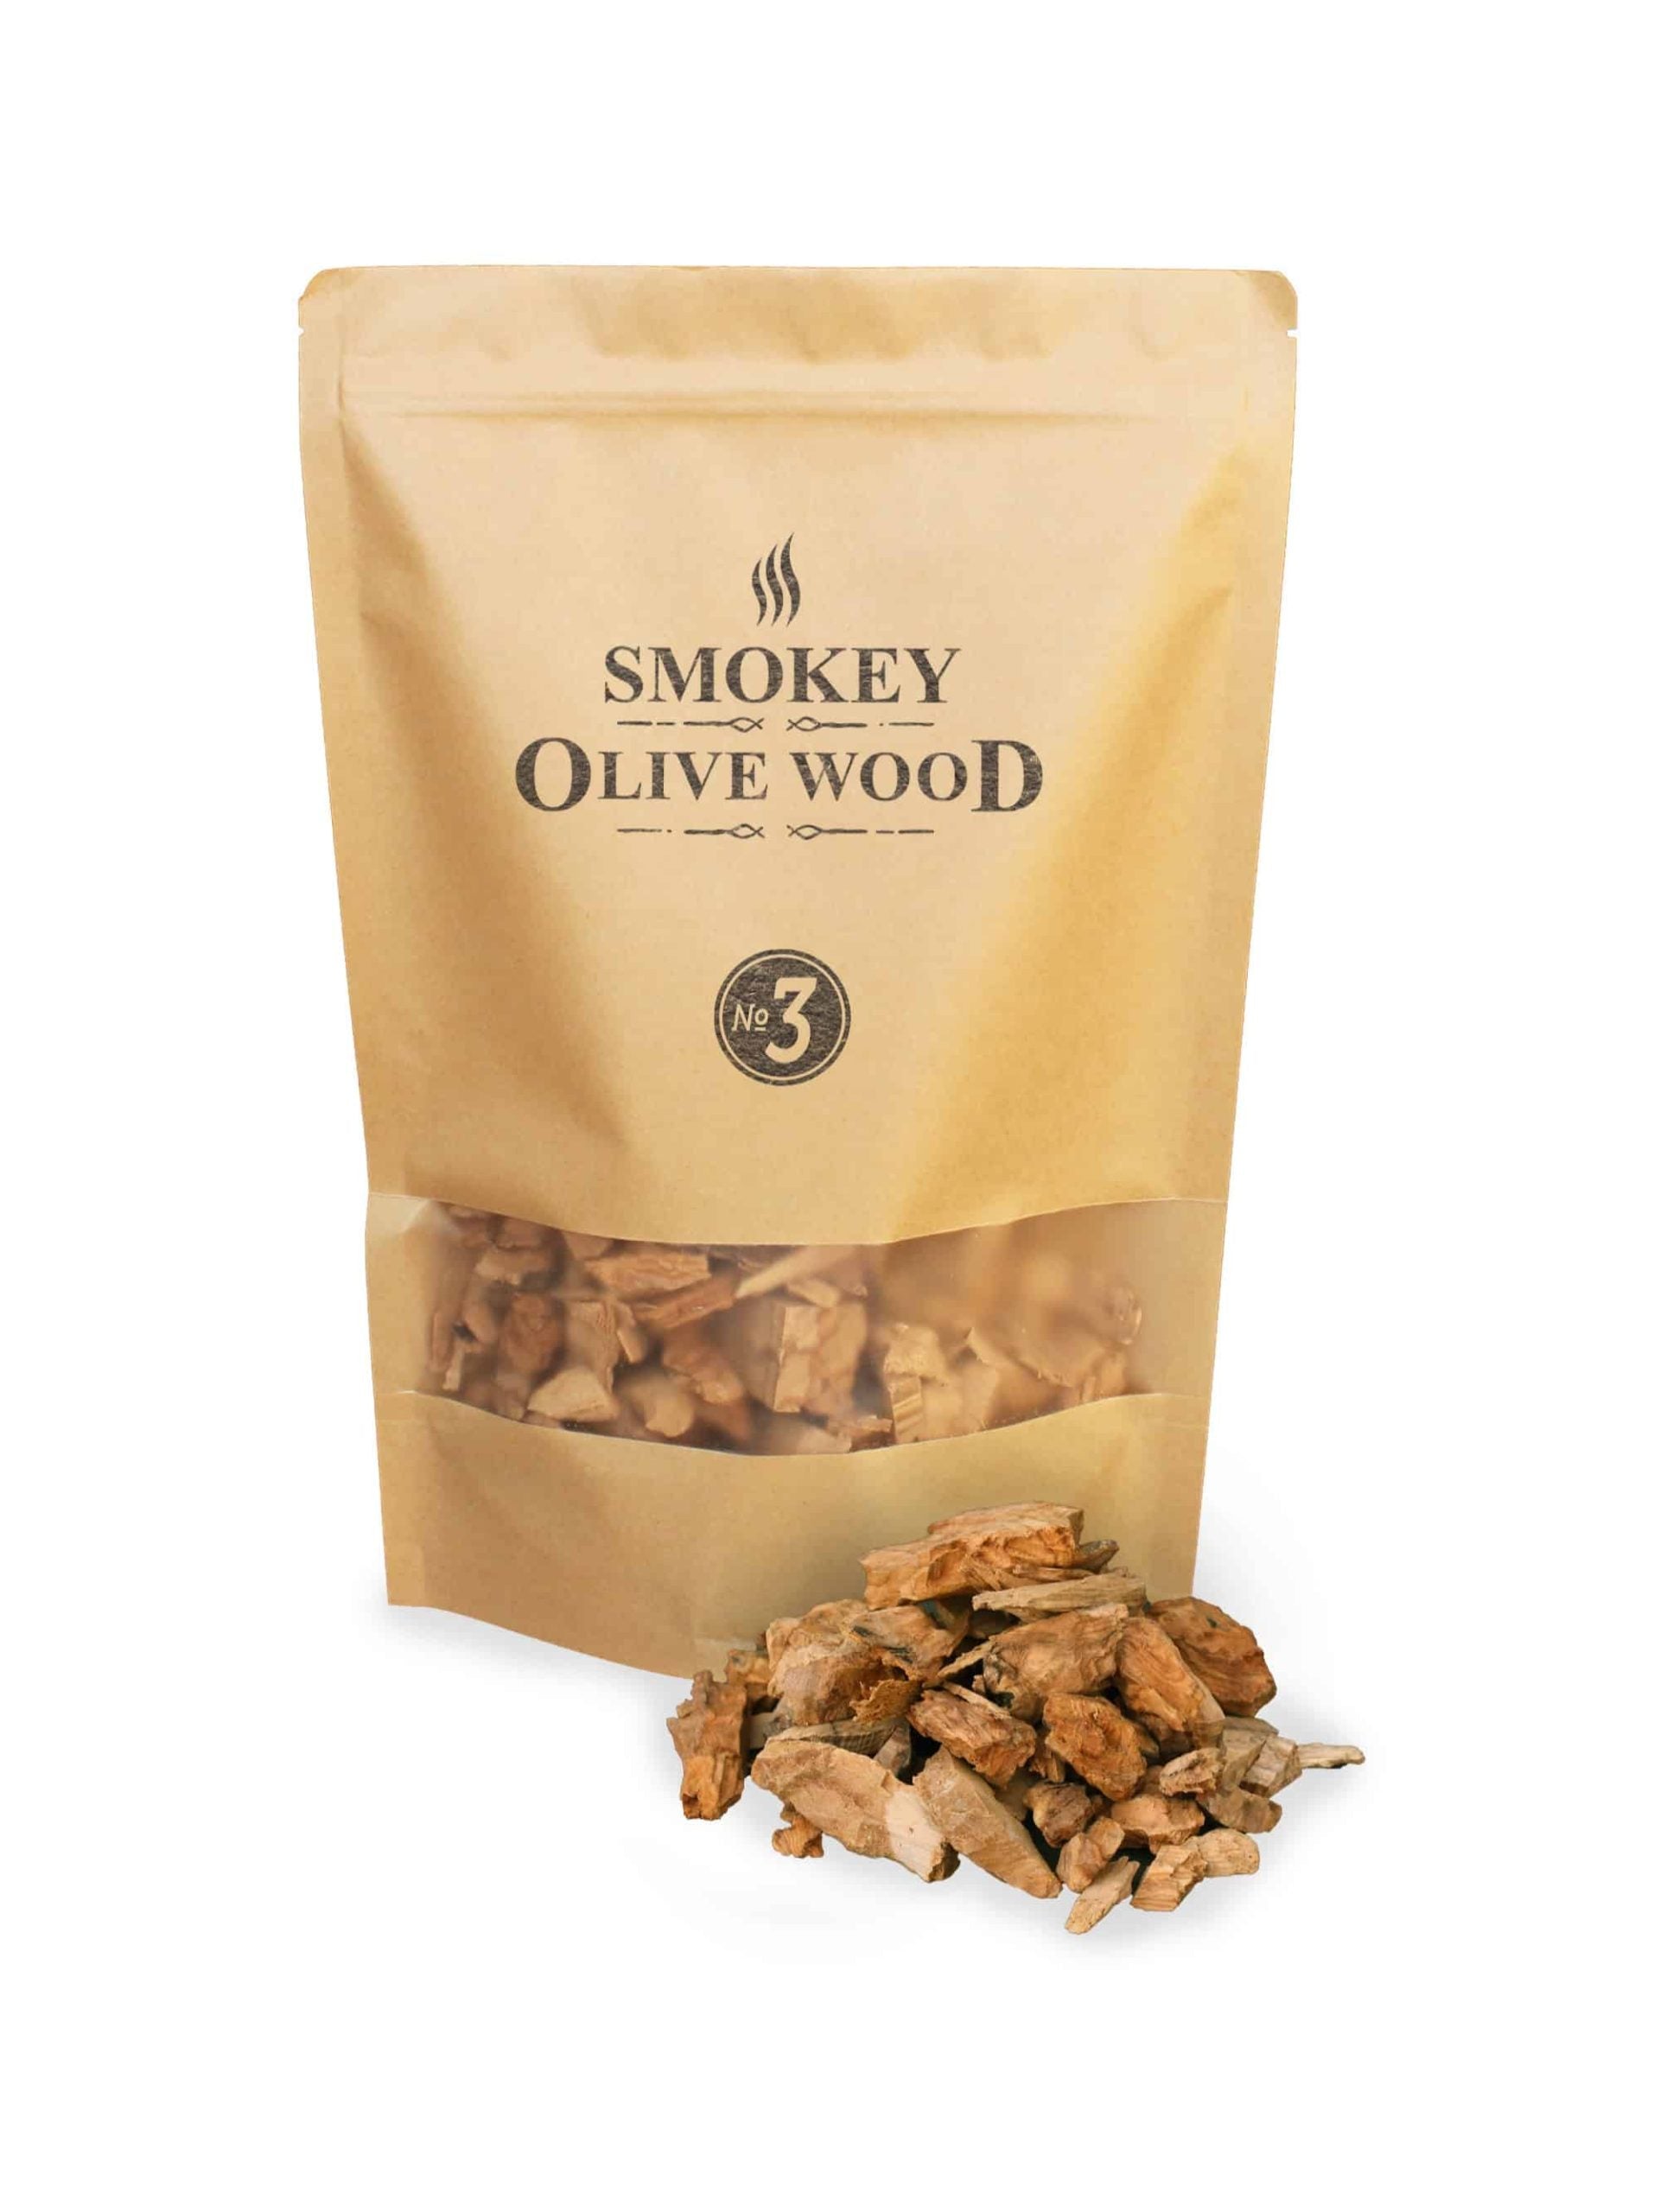 Smokey Olive Wood Räucherchips, Olivenholz 1,7l